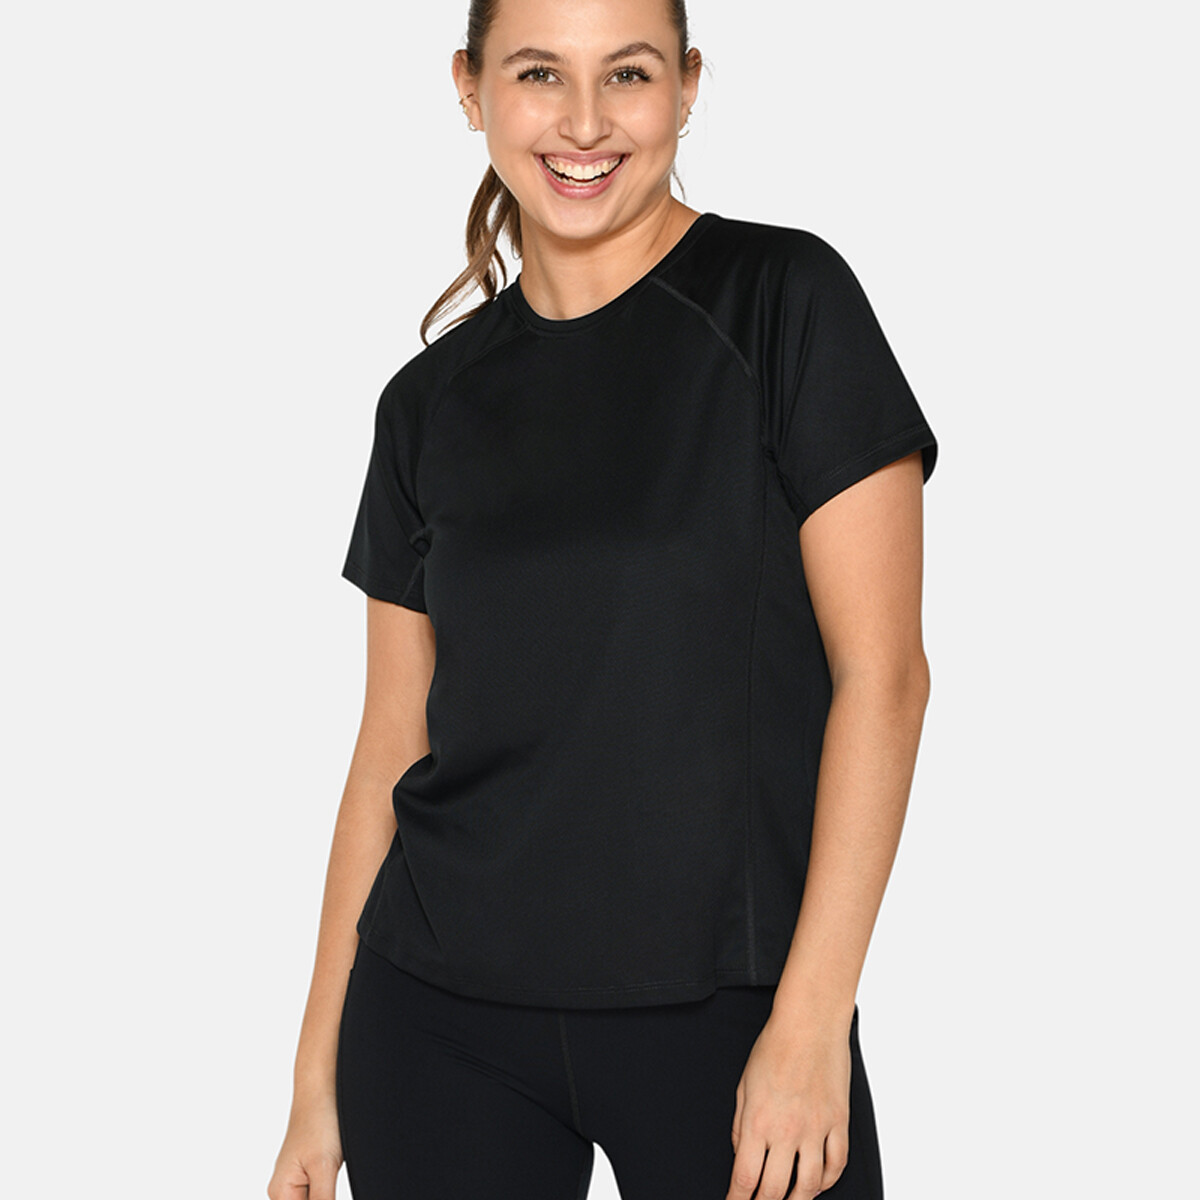 Se Zebdia Women Sports T-shirt, Farve: Sort, Størrelse: L, Dame hos Netlingeri.dk